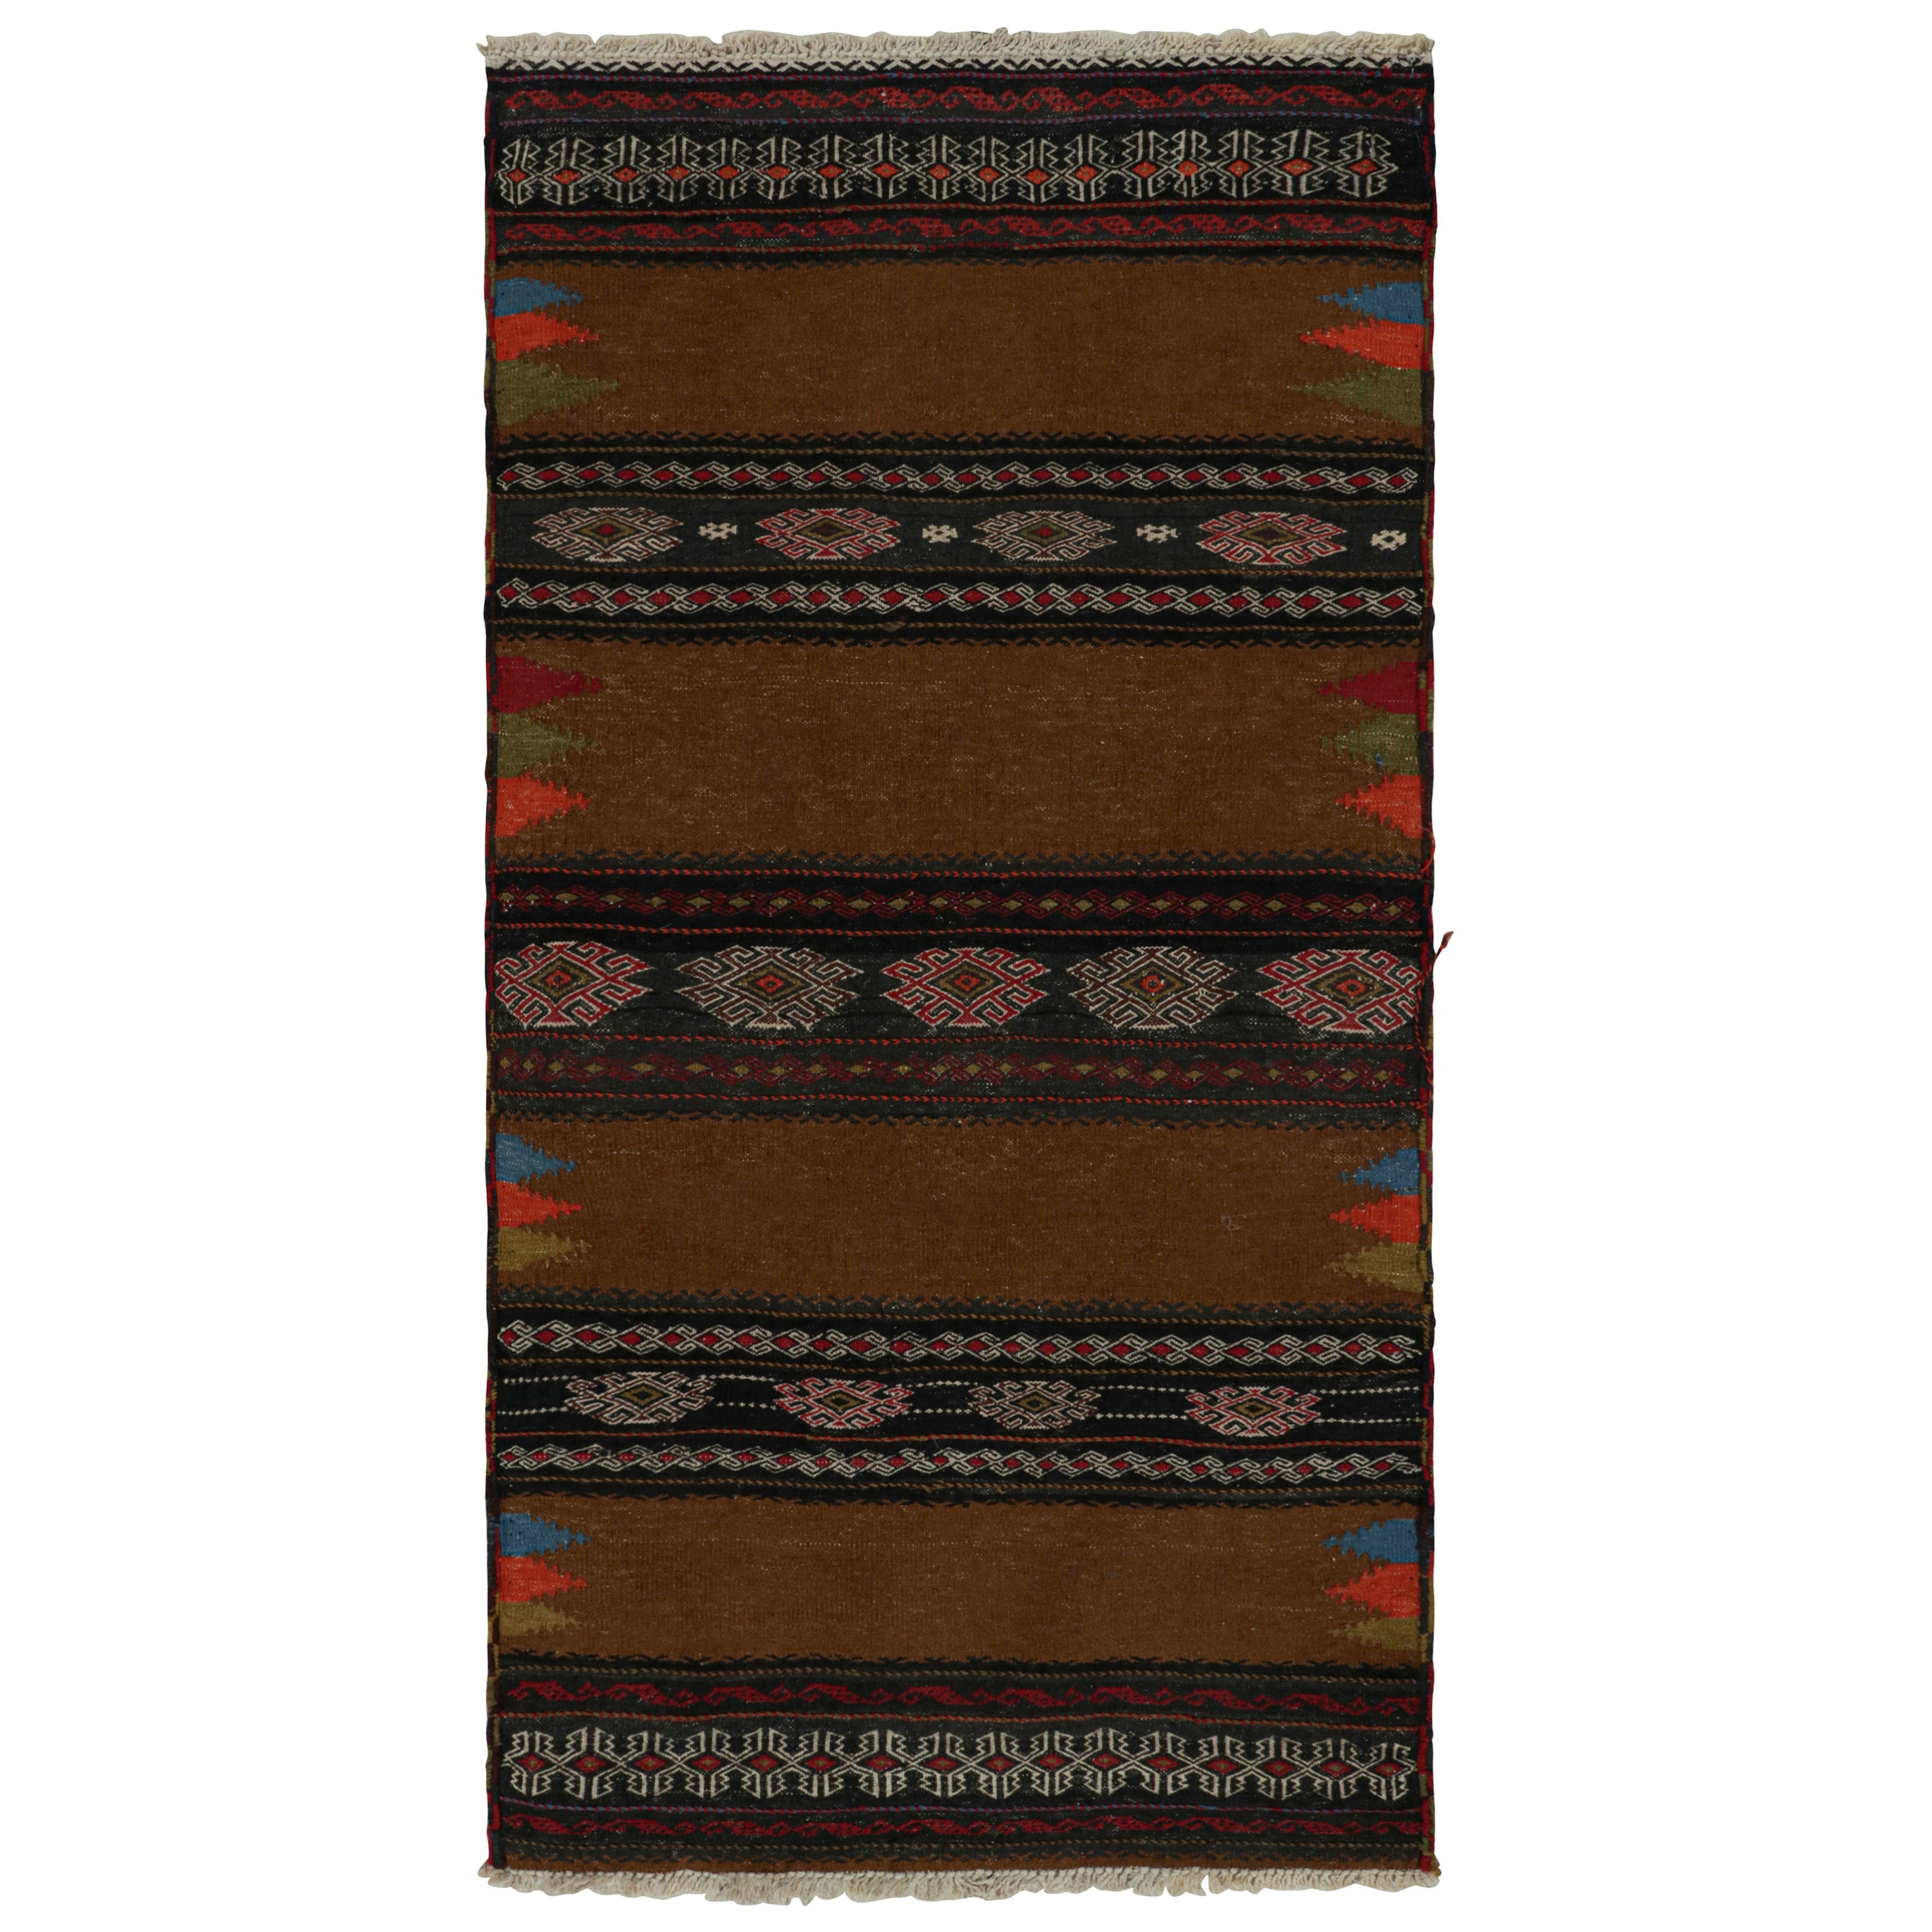 Vintage Afghan Tribal Kilim in Brown with Geometric Patterns, from Rug & Kilim